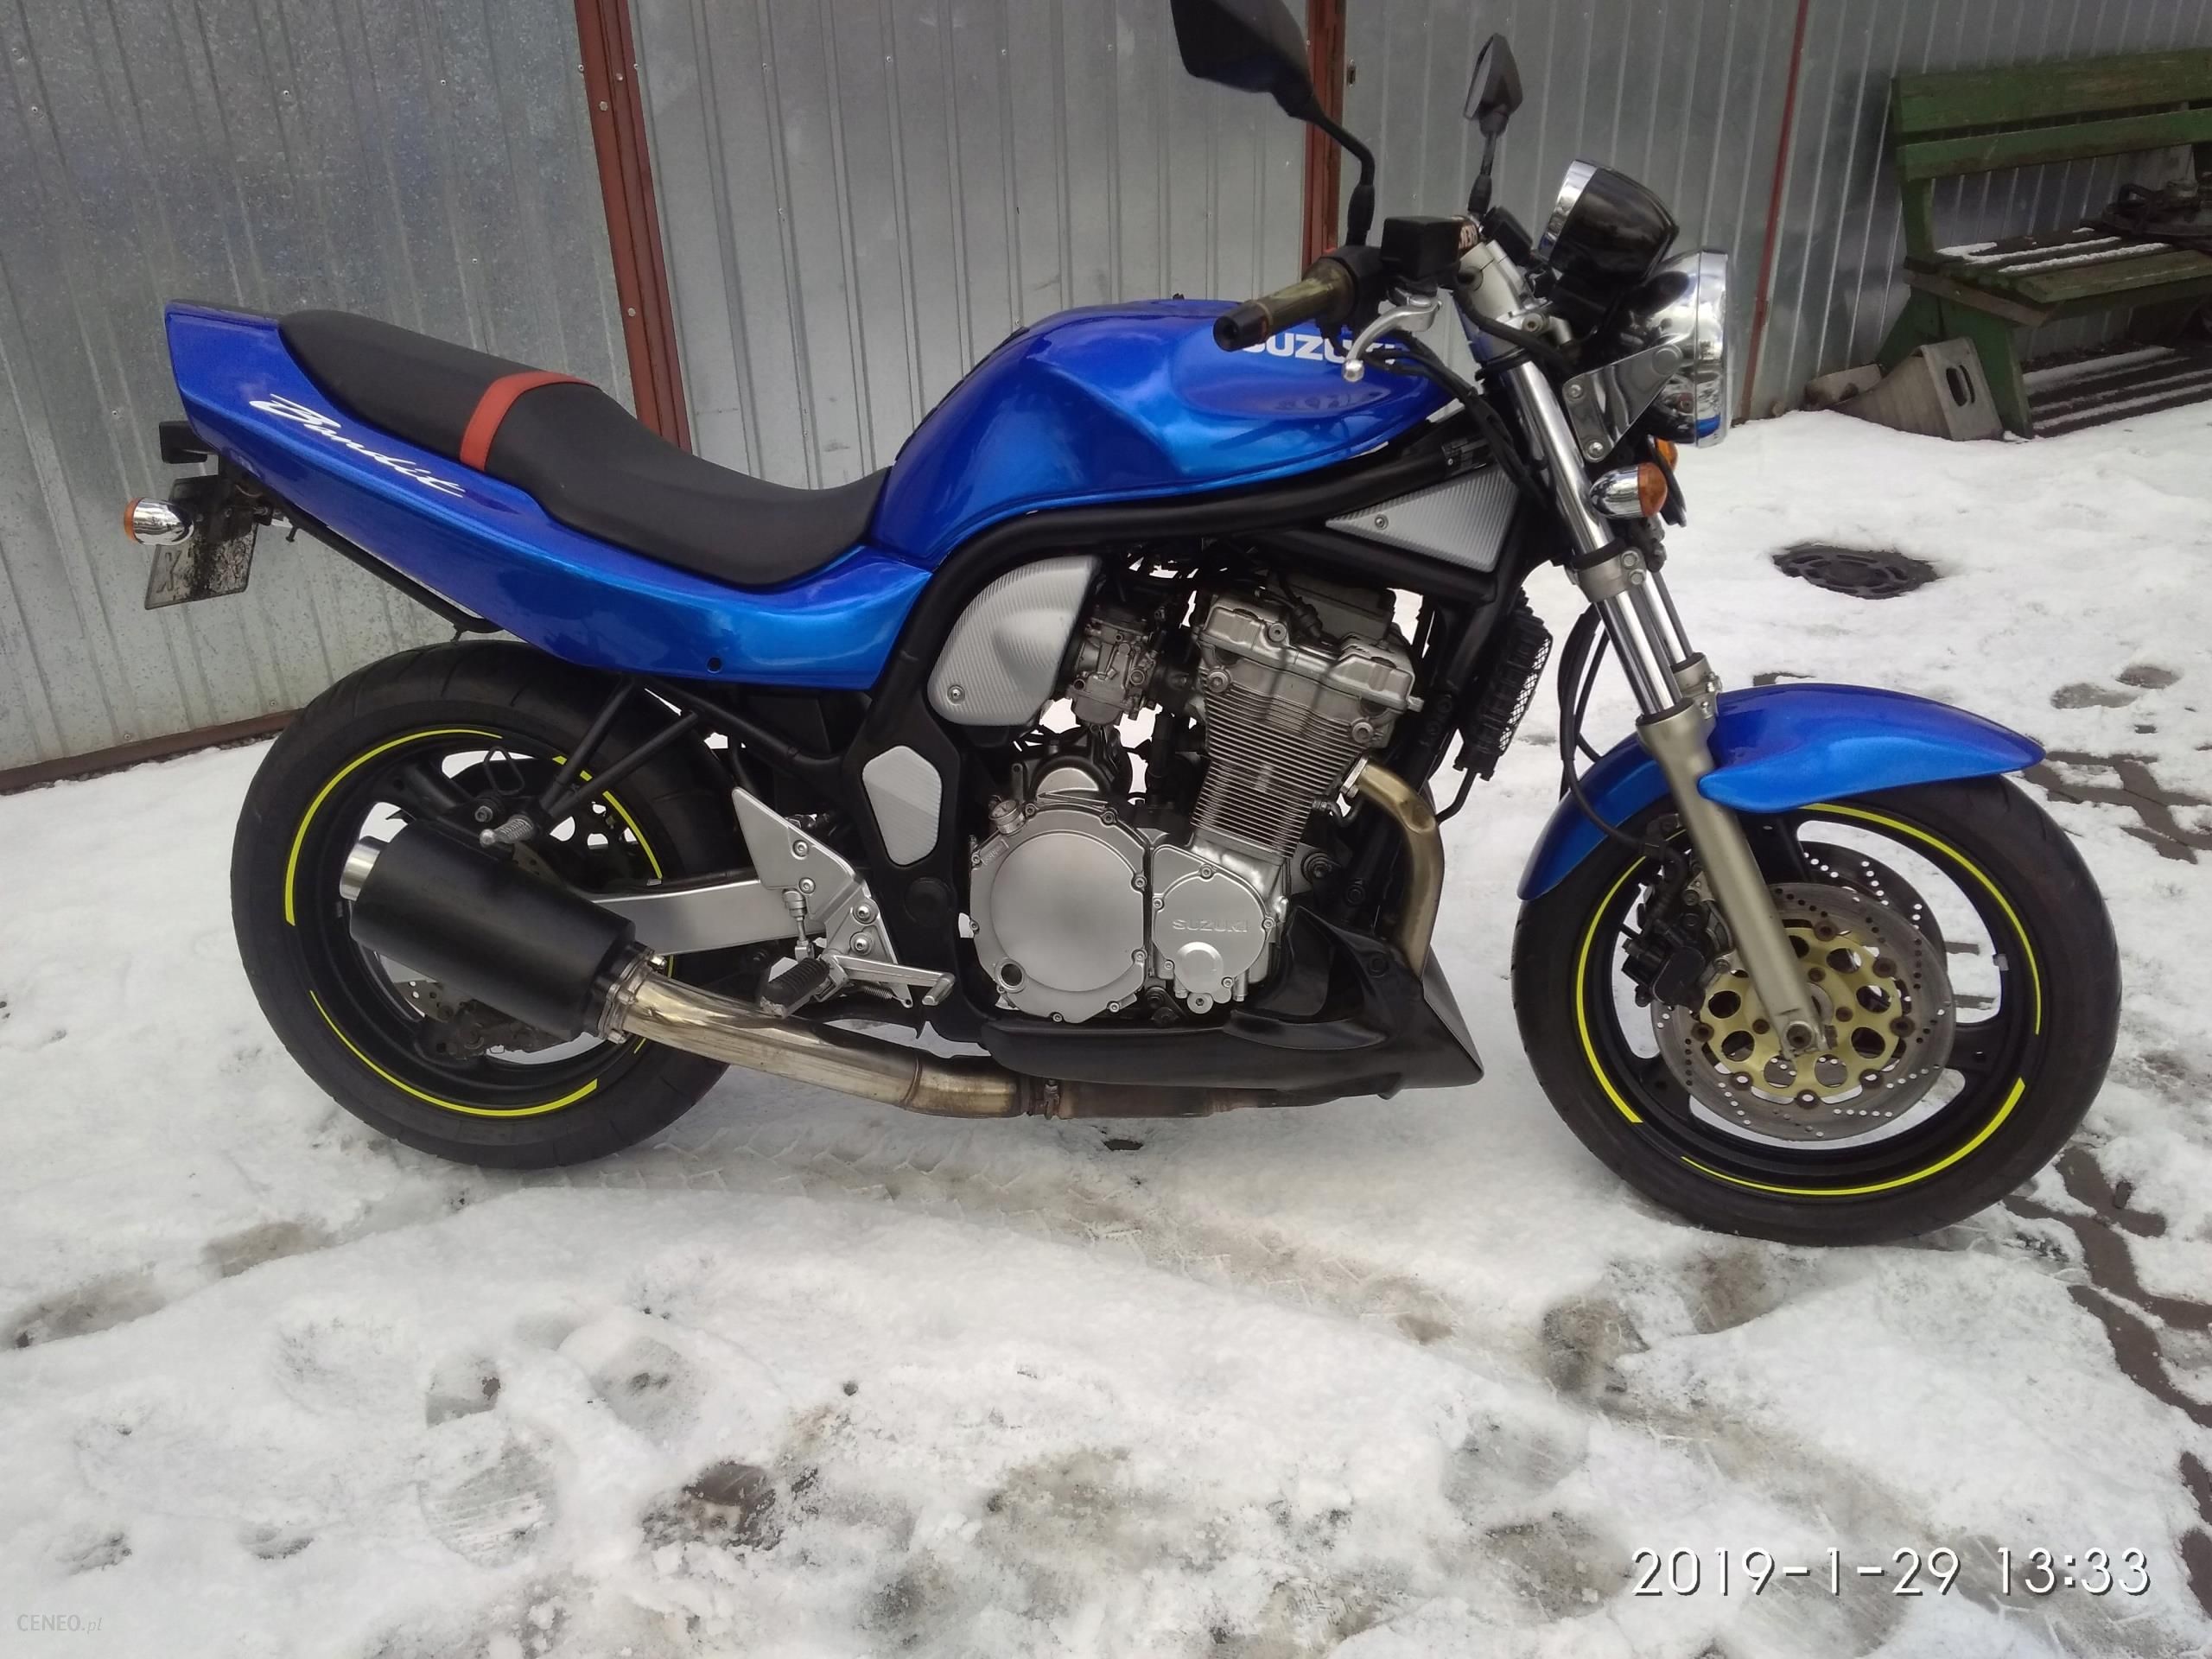 Motocykle Suzuki Bandit 600 Opinie I Ceny Na Ceneo Pl